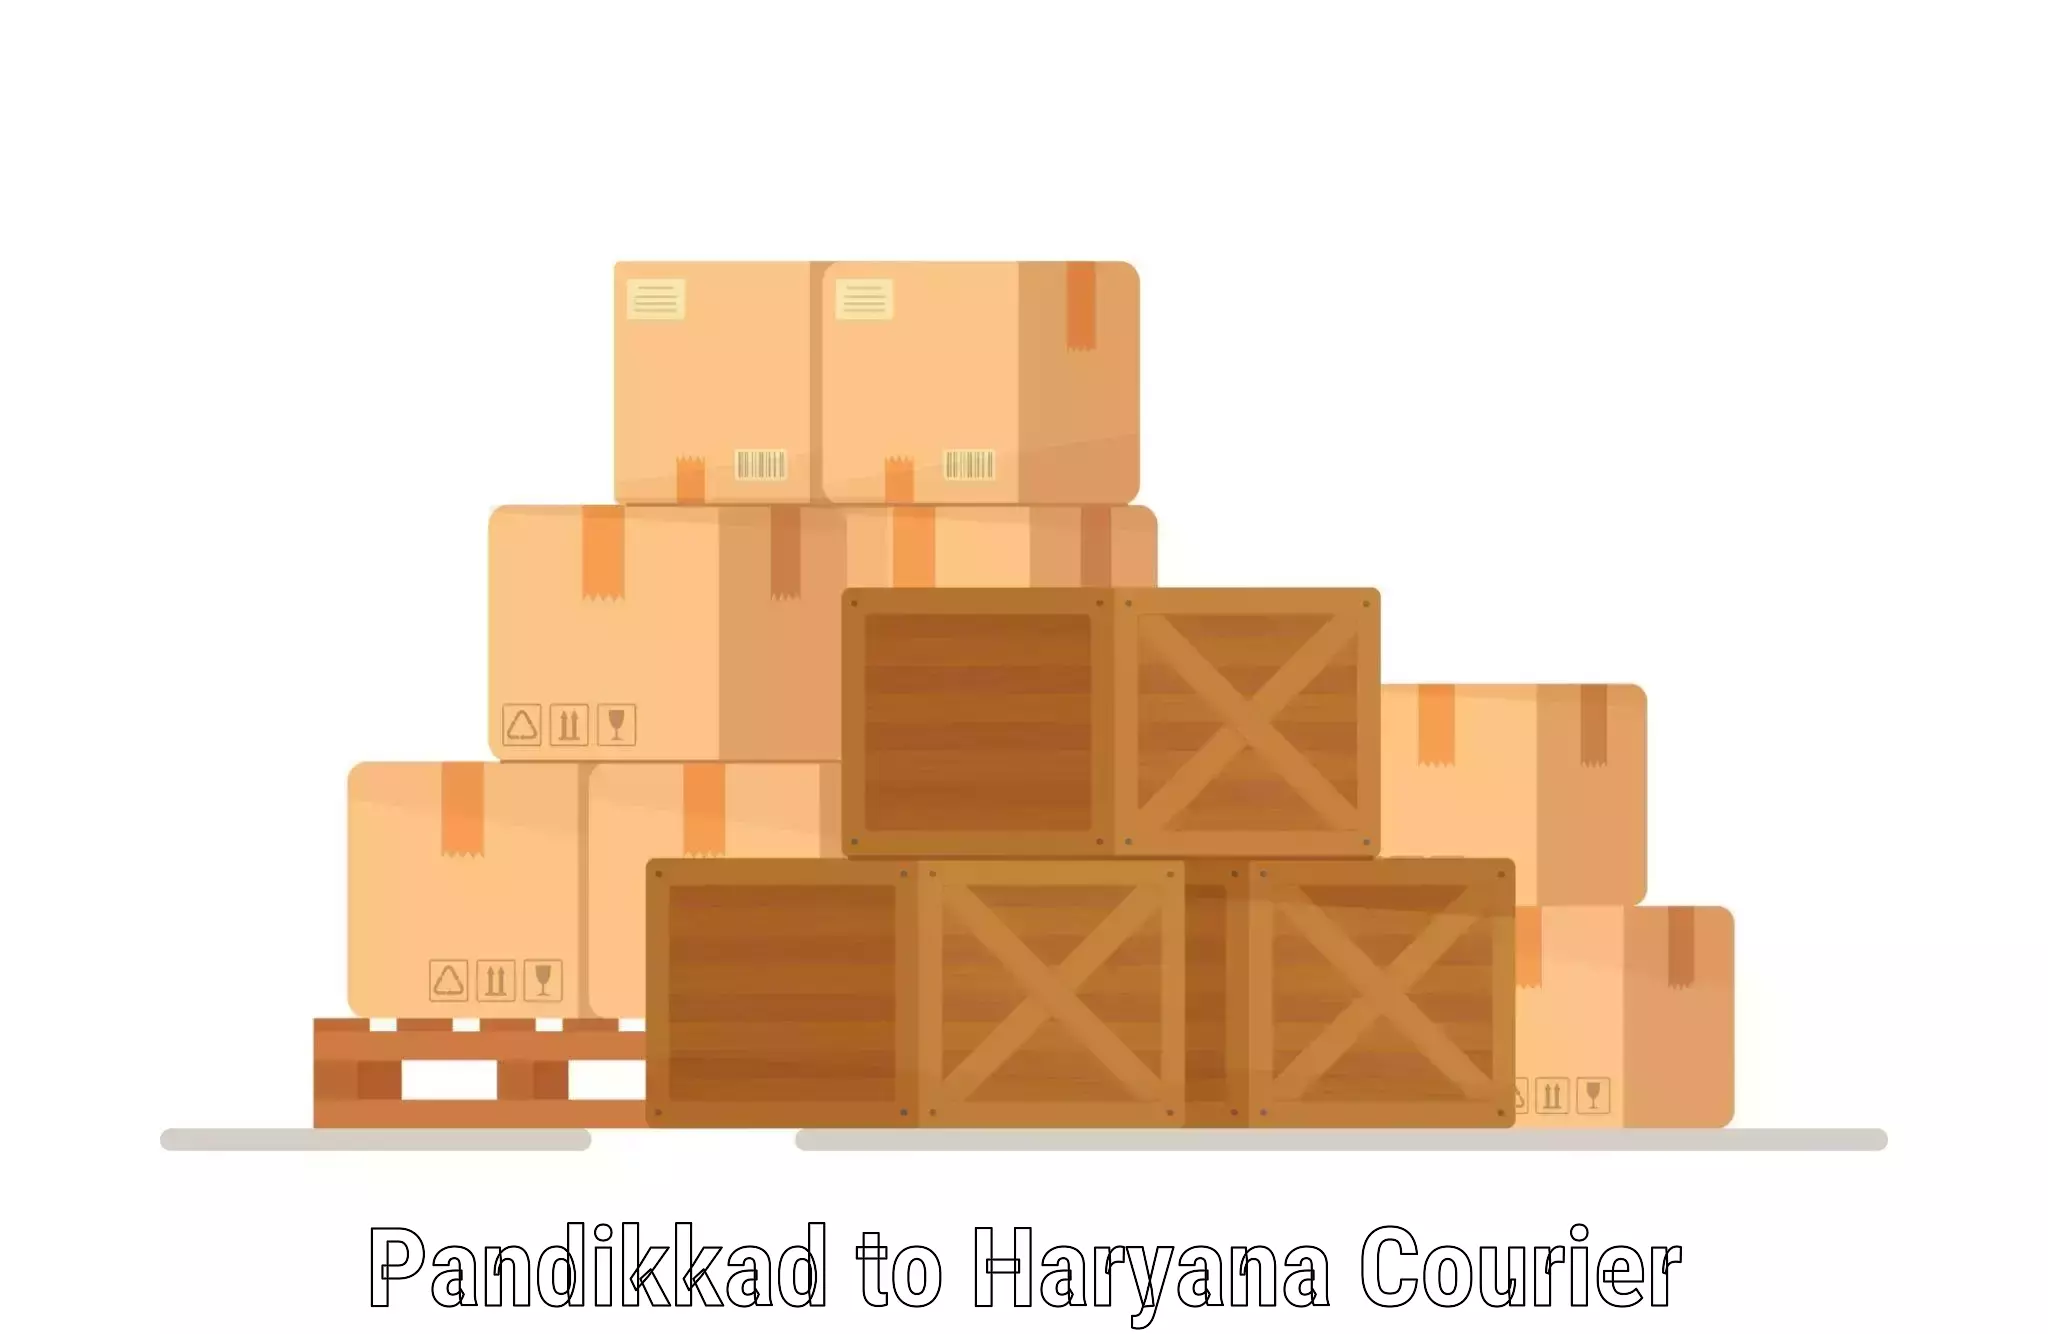 High-speed parcel service Pandikkad to Ellenabad